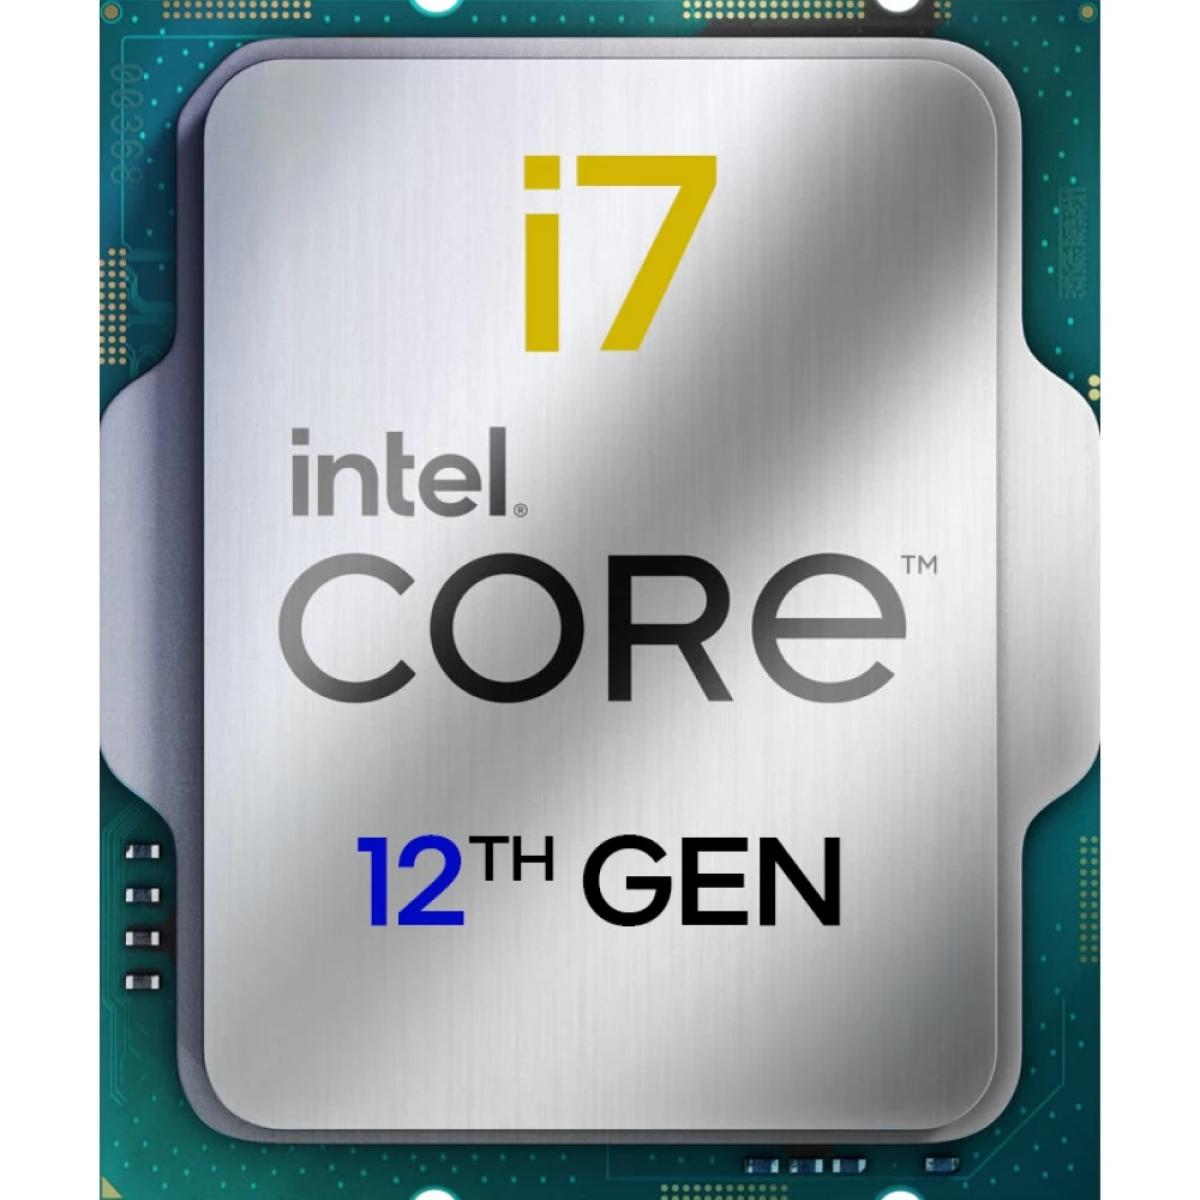 Intel Core i7-12700 Desktop 12TH Gen Processor LGA1700, 12 Cores (8P+4E